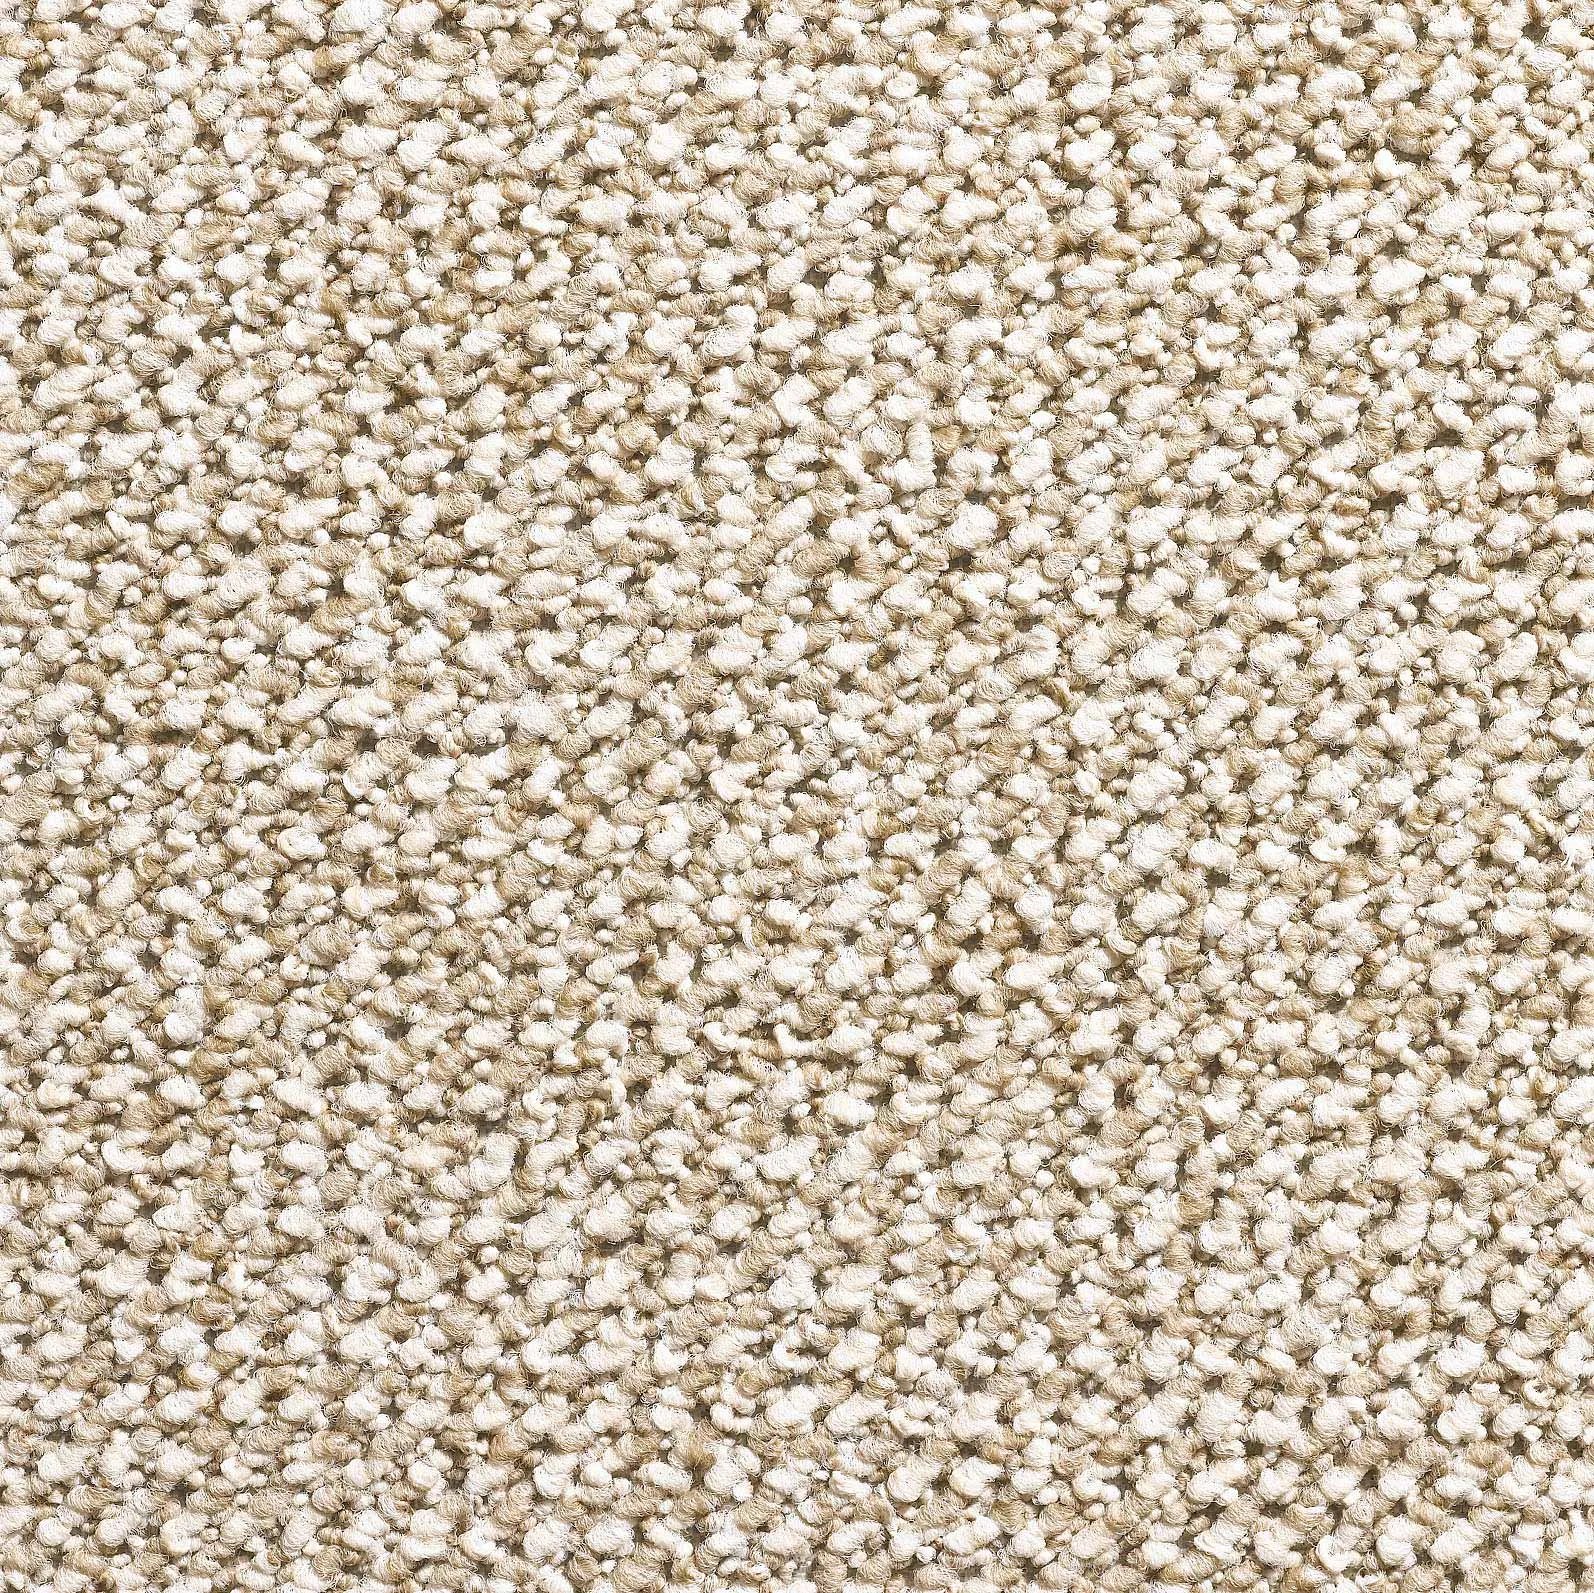 Titan Loop Pile Carpet - Berber 1413